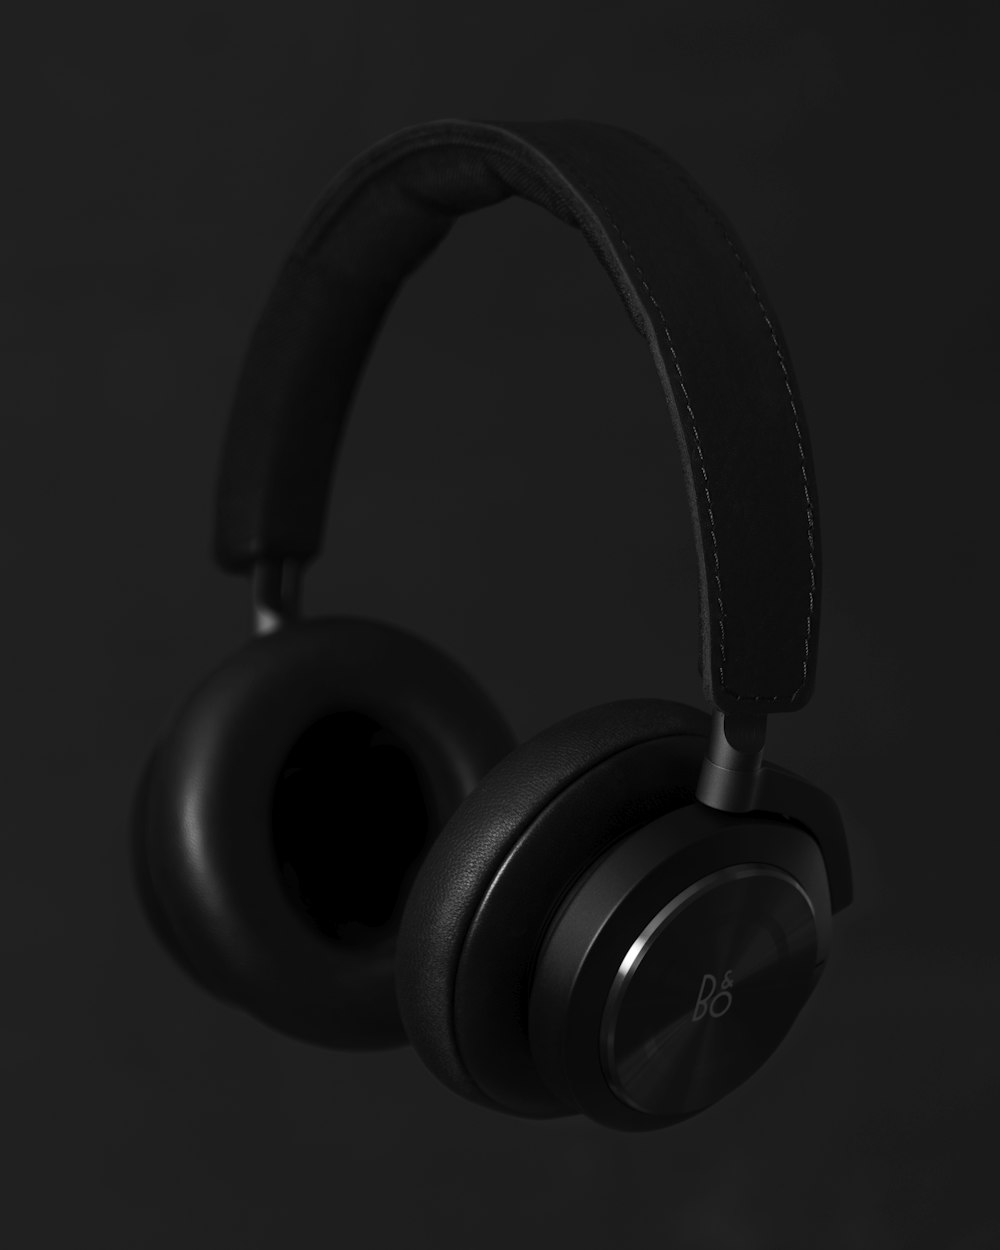 schwarze kabellose Kopfhörer